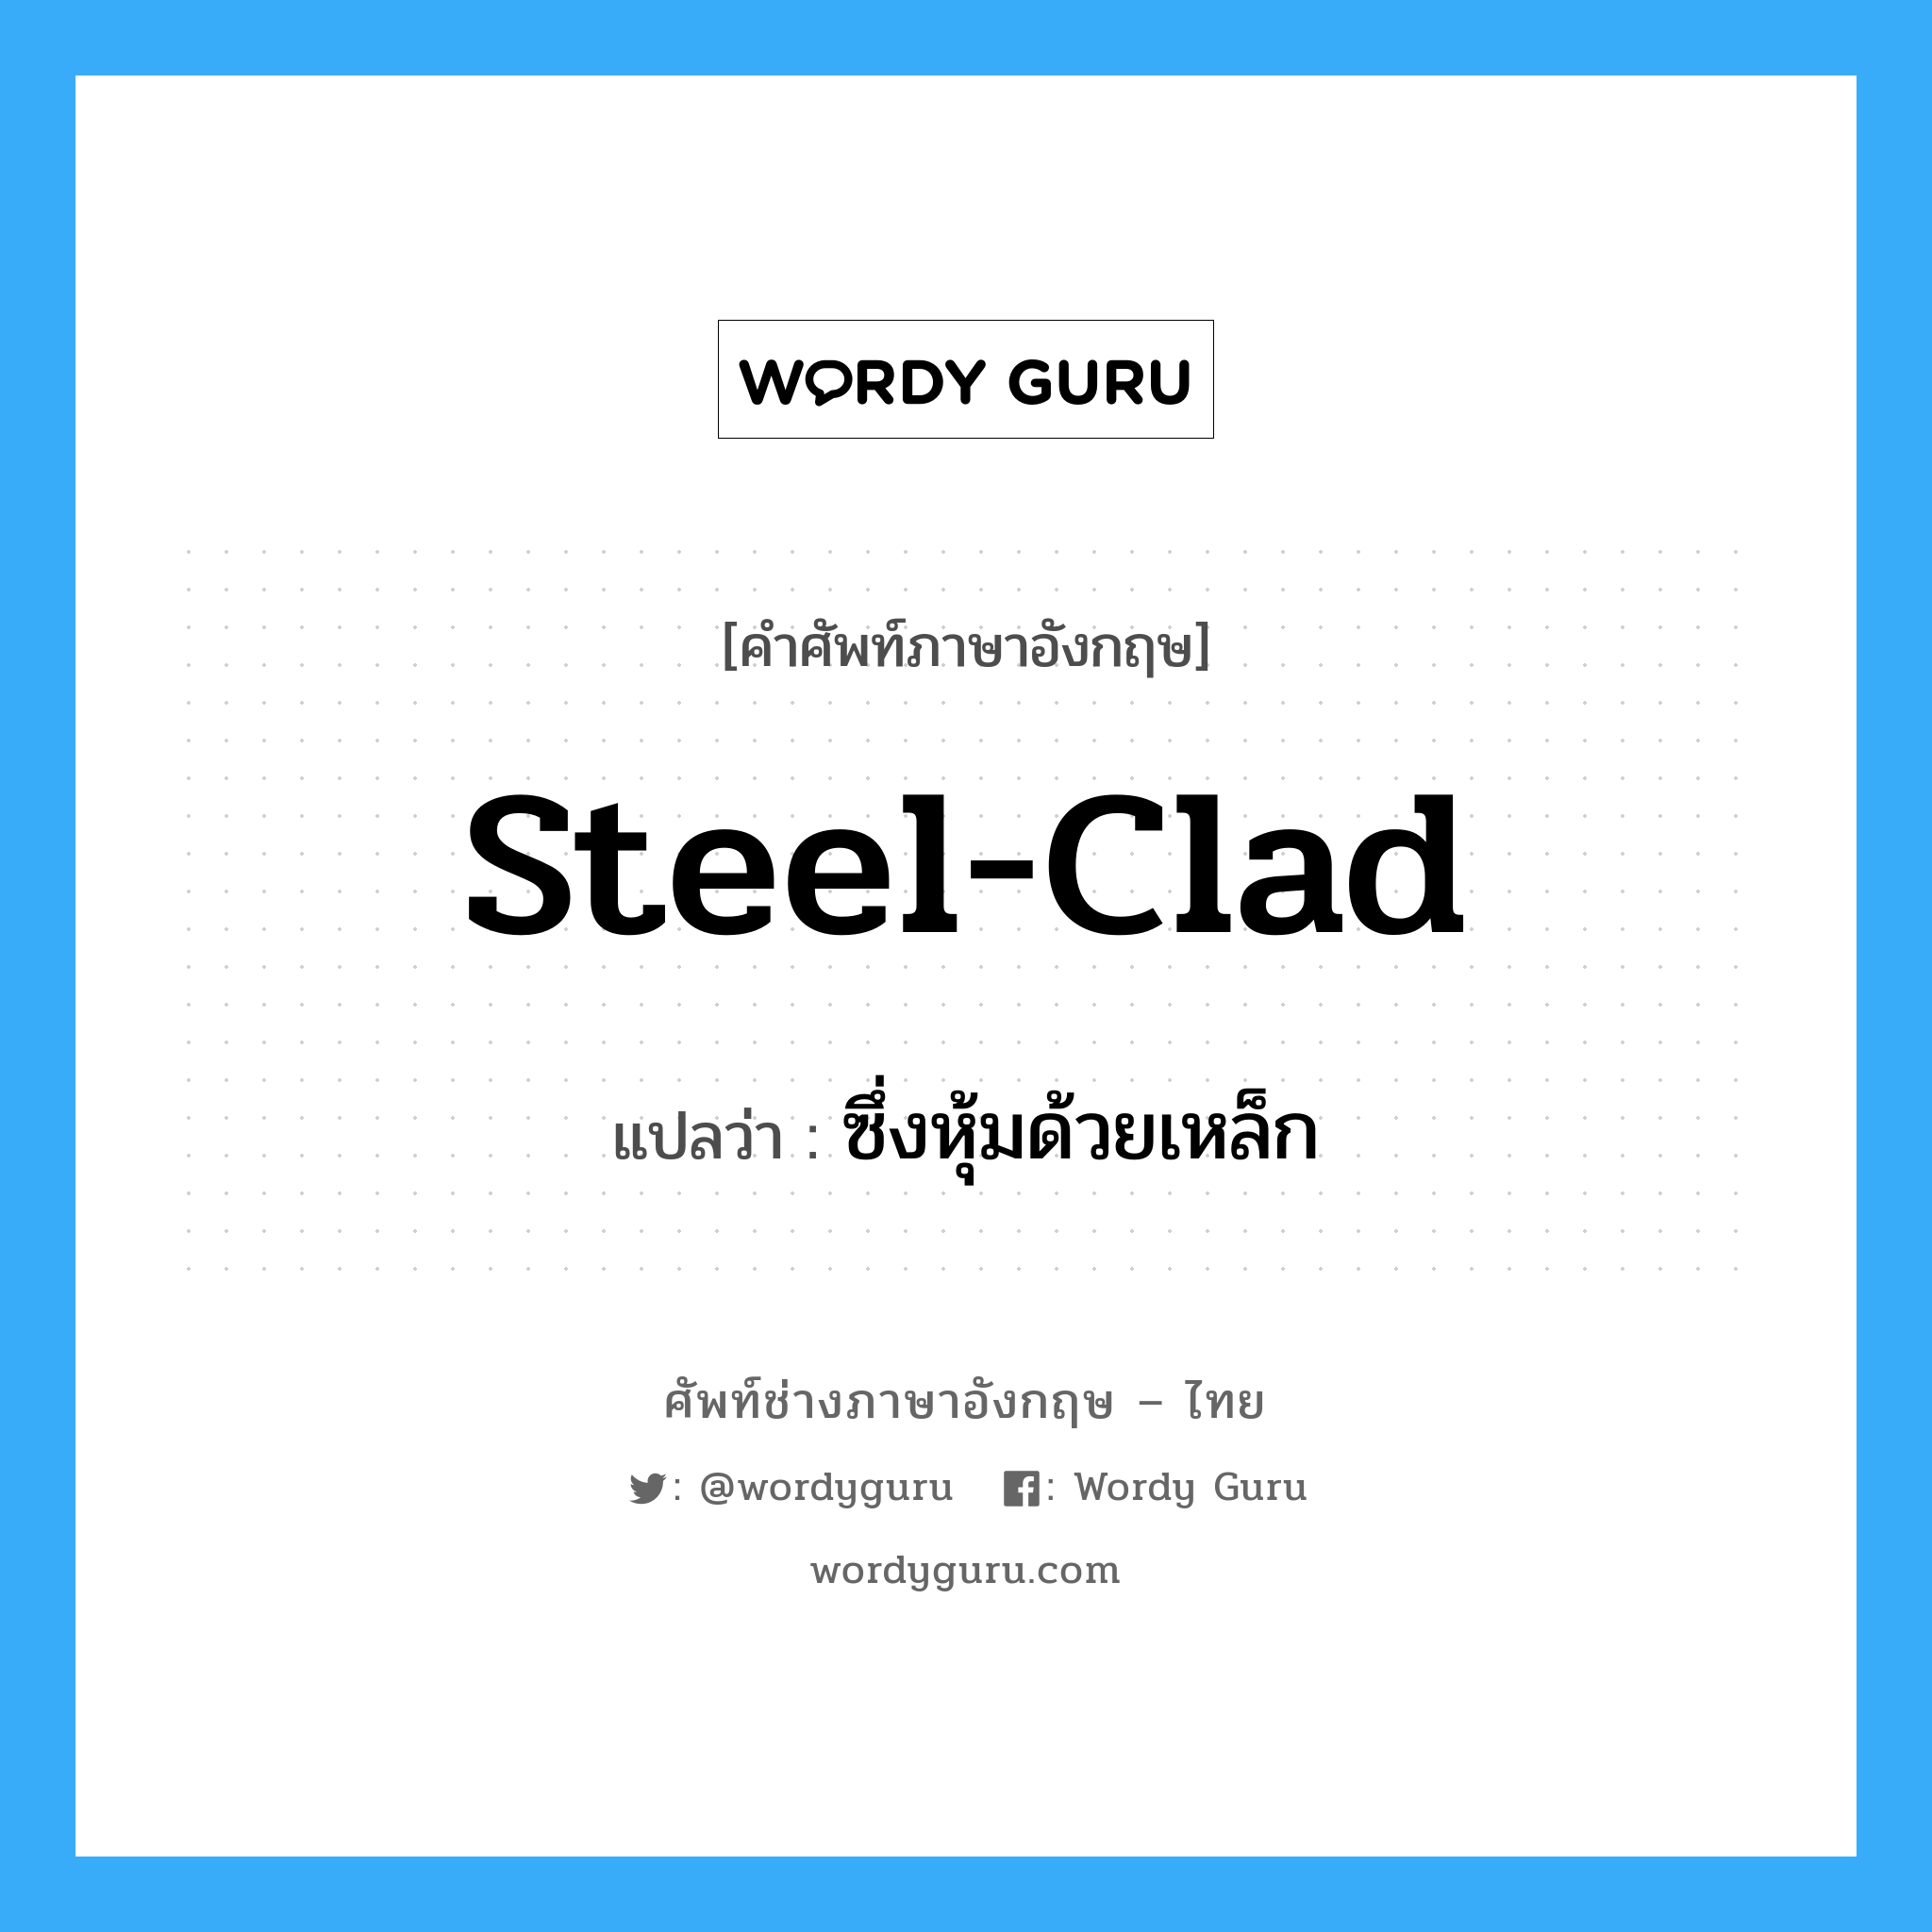 steel-clad แปลว่า?, คำศัพท์ช่างภาษาอังกฤษ - ไทย steel-clad คำศัพท์ภาษาอังกฤษ steel-clad แปลว่า ซึ่งหุ้มด้วยเหล็ก